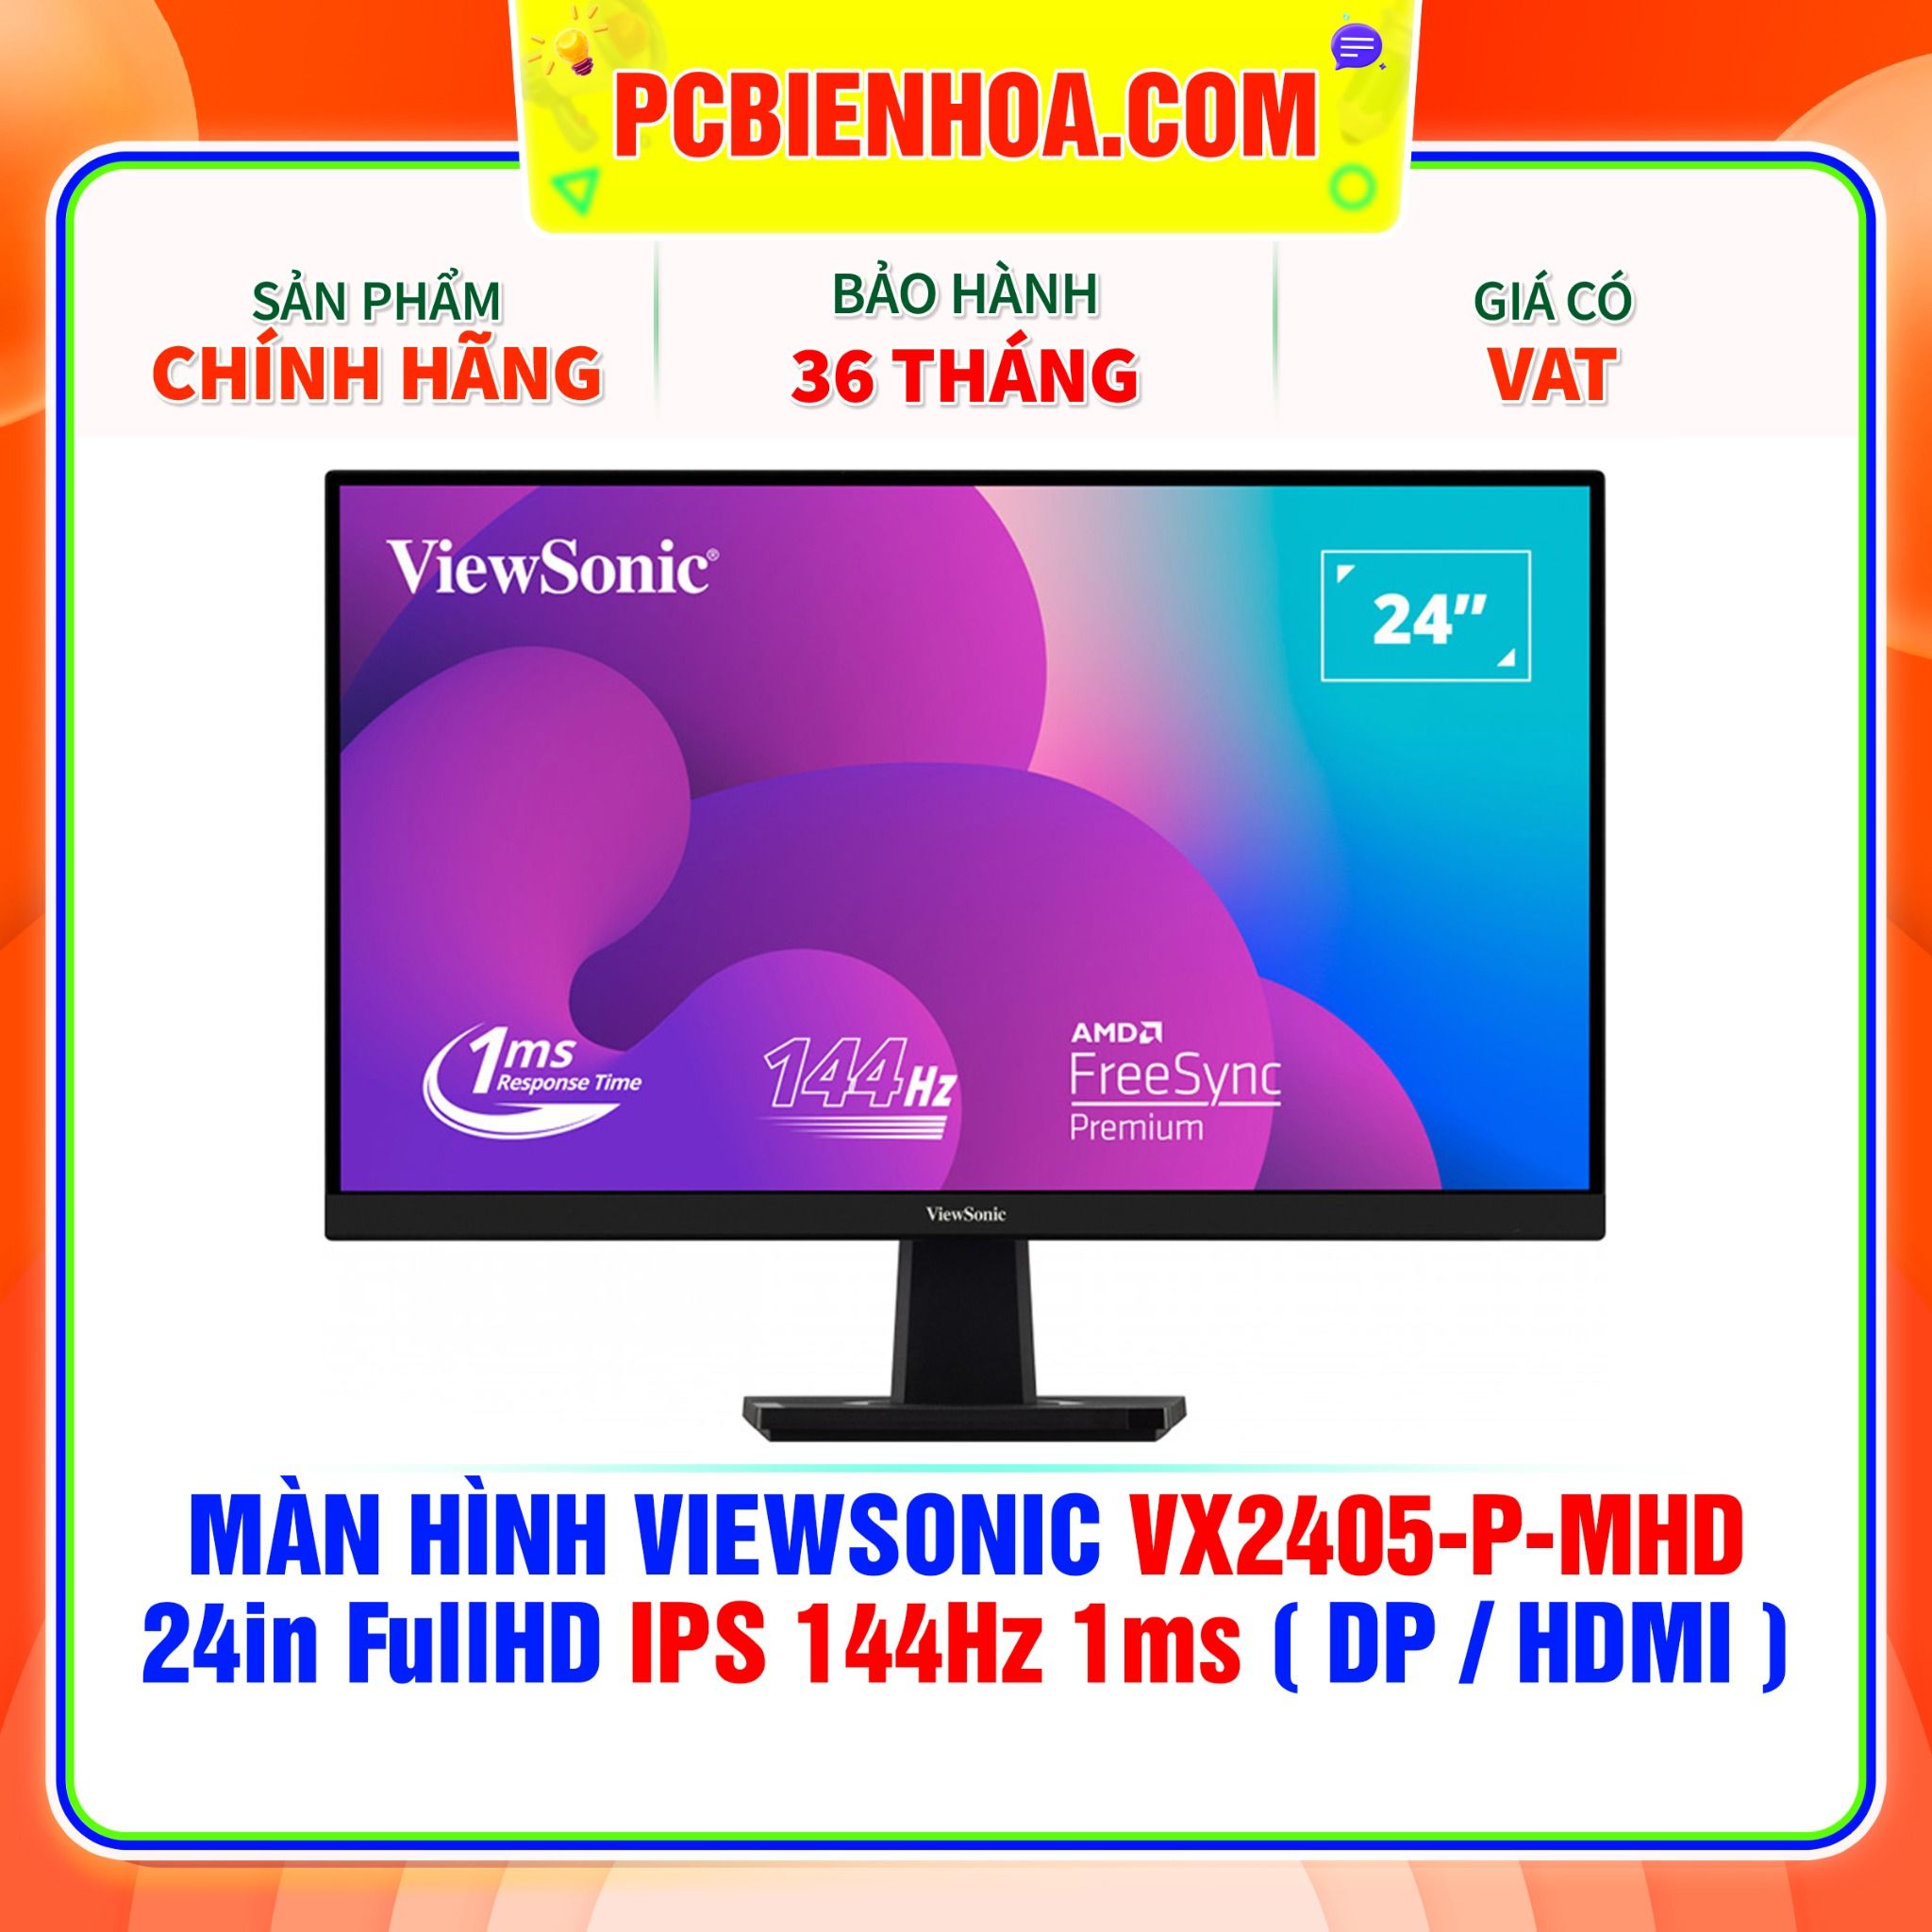  MÀN HÌNH VIEWSONIC VX2405-P-MHD 24in FullHD IPS 144Hz 1ms ( DP / HDMI ) 